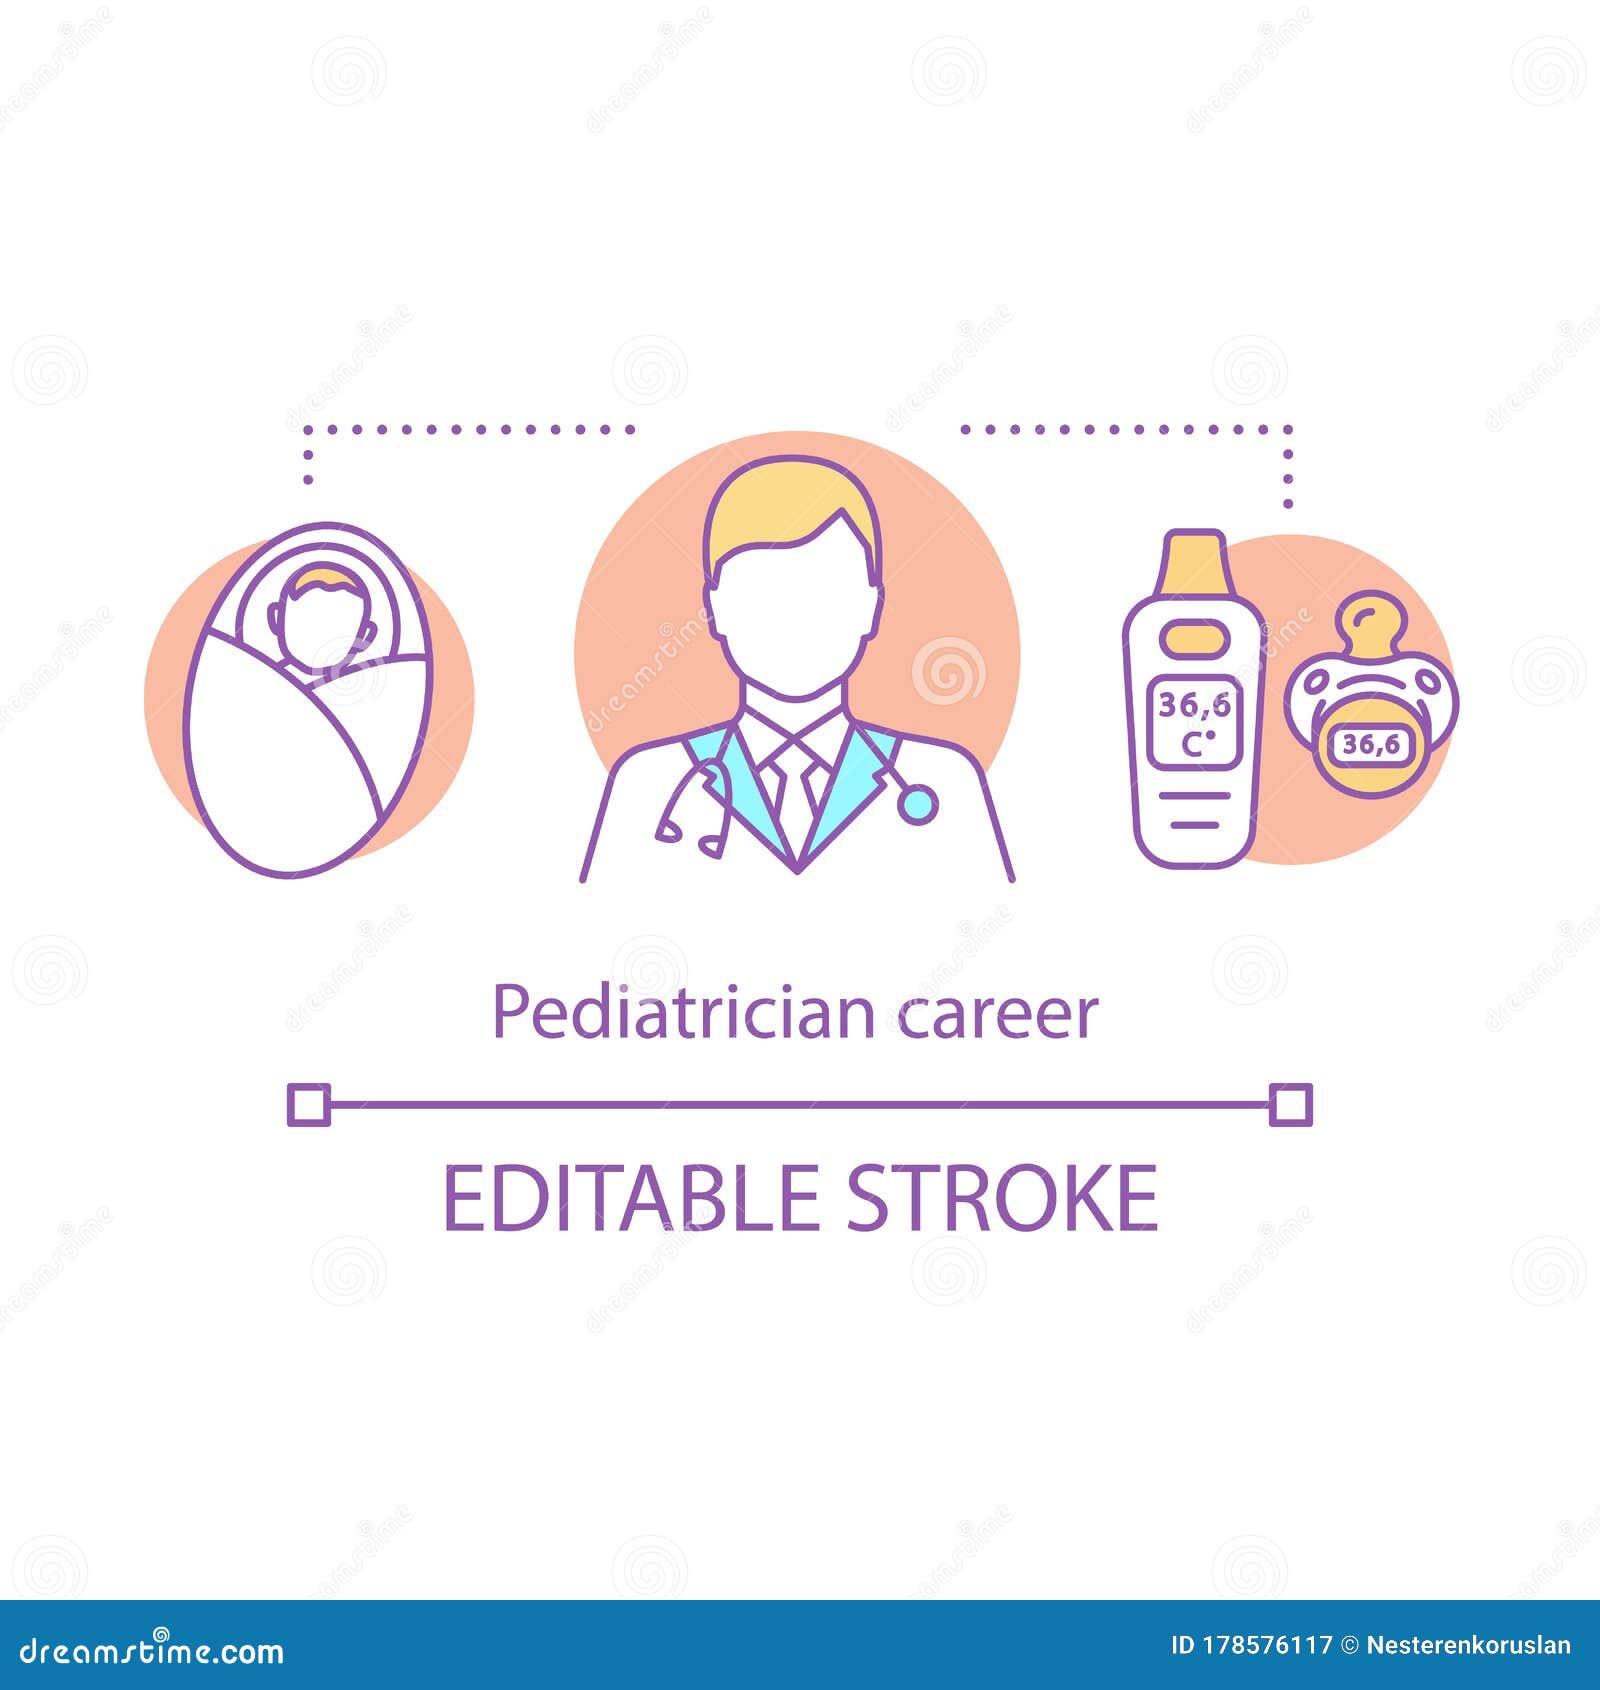 pediatrician career concept icon